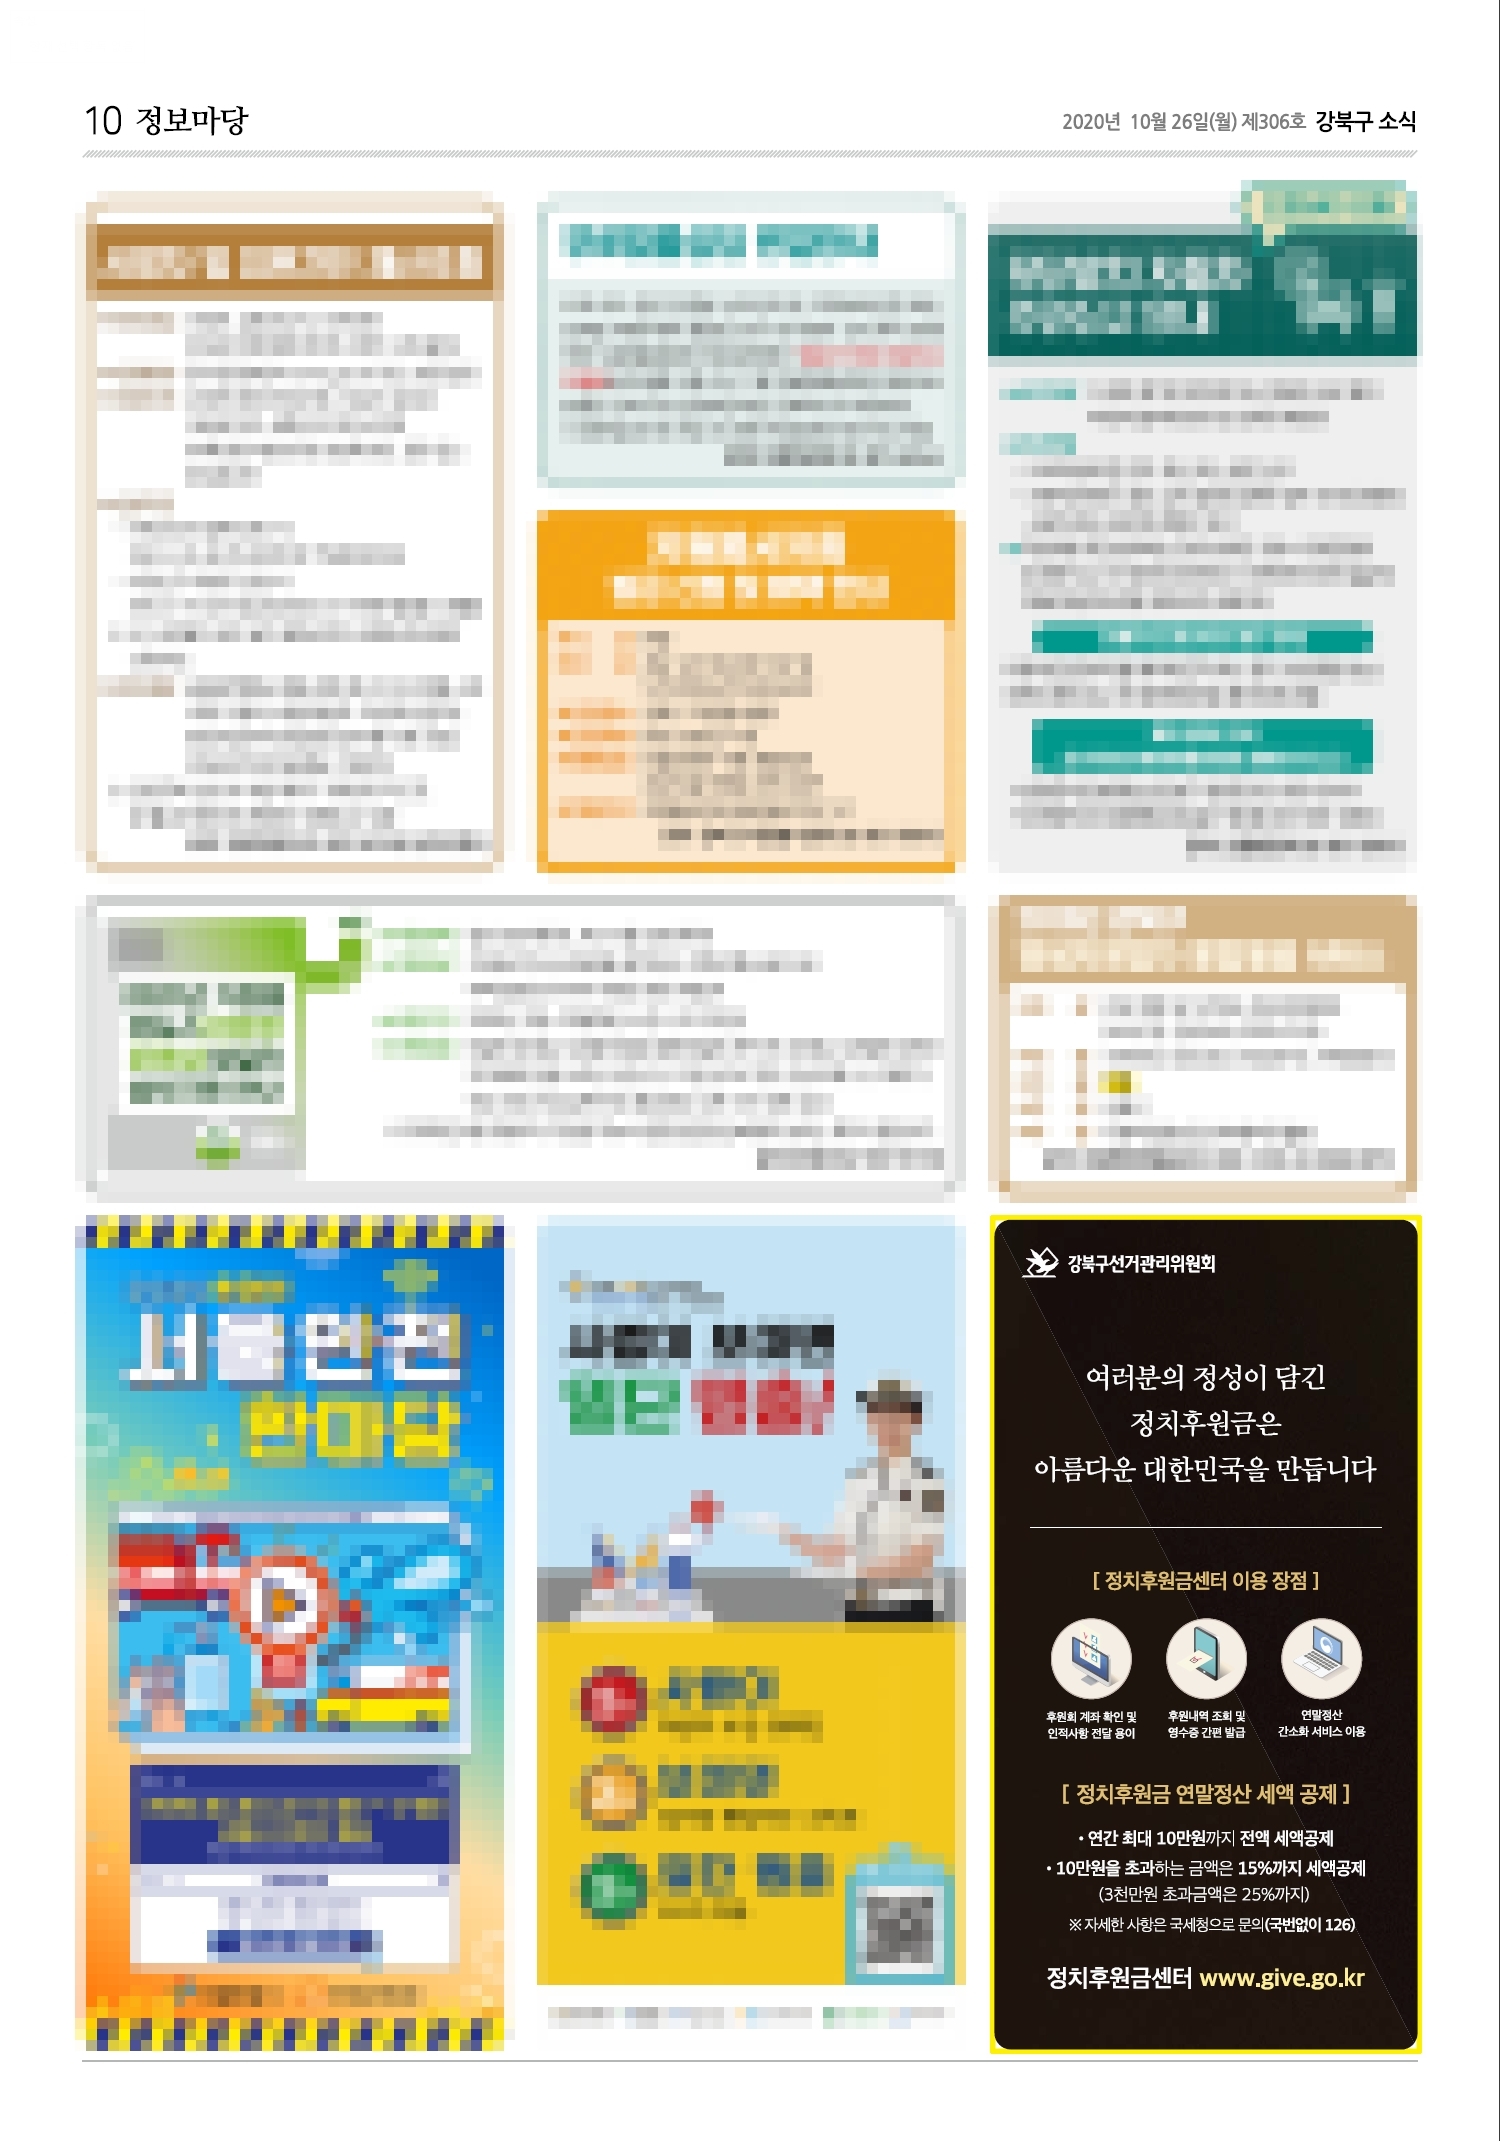 강북구선거관리위원회는 강북구 소식지(11월호)에 정치후원금 활성화 홍보 도안을 게재하였습니다.